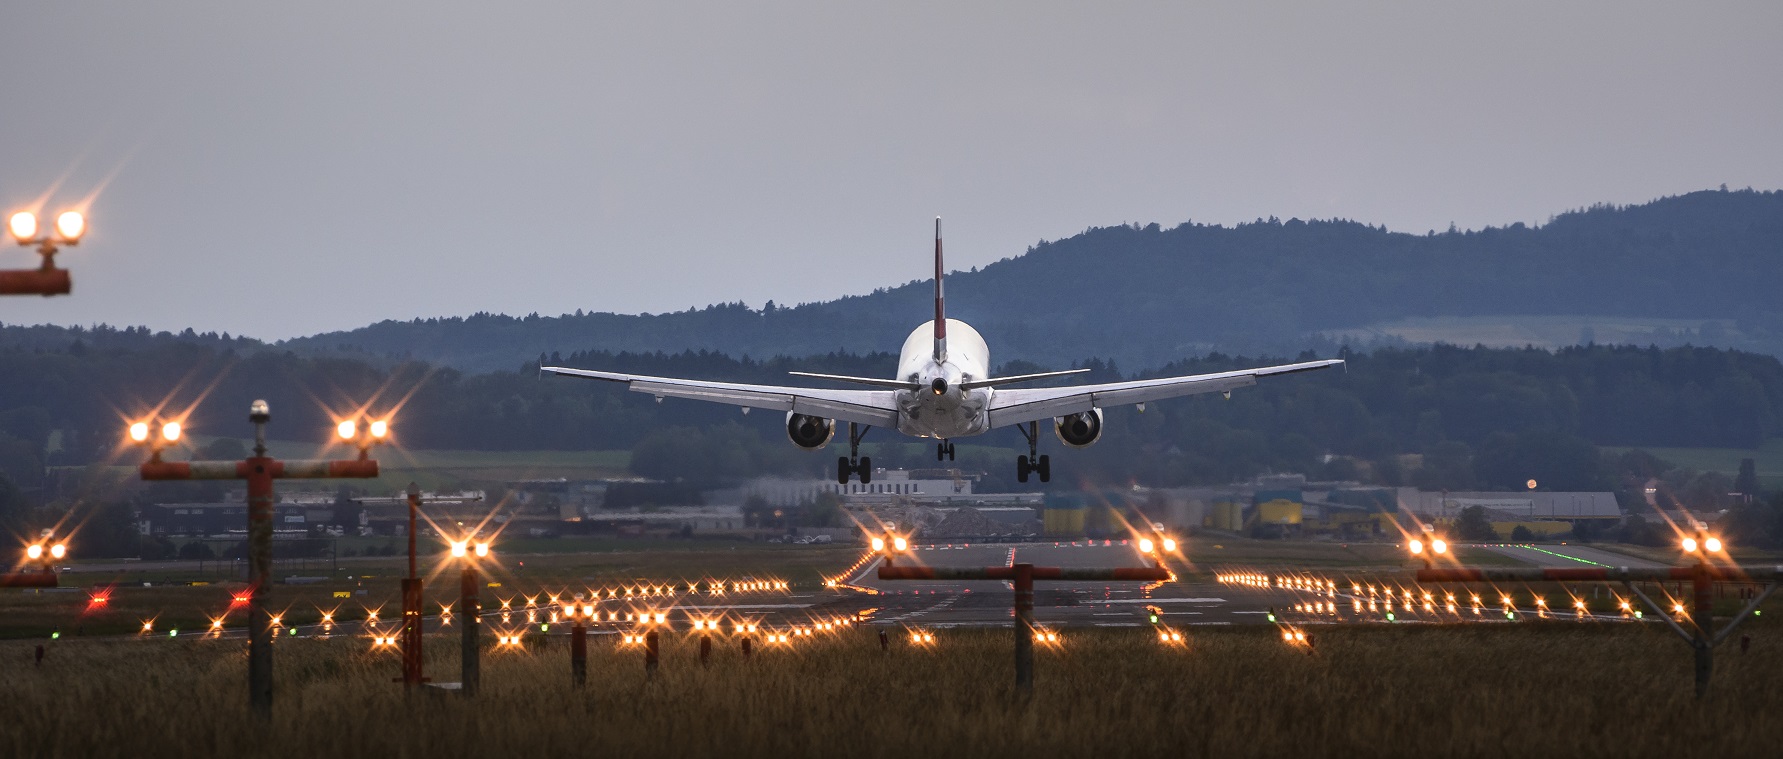 Αερομεταφορές: Οι πτήσεις γίνονται φθηνότερες, οι αεροπορικές εταιρείες πιέζονται